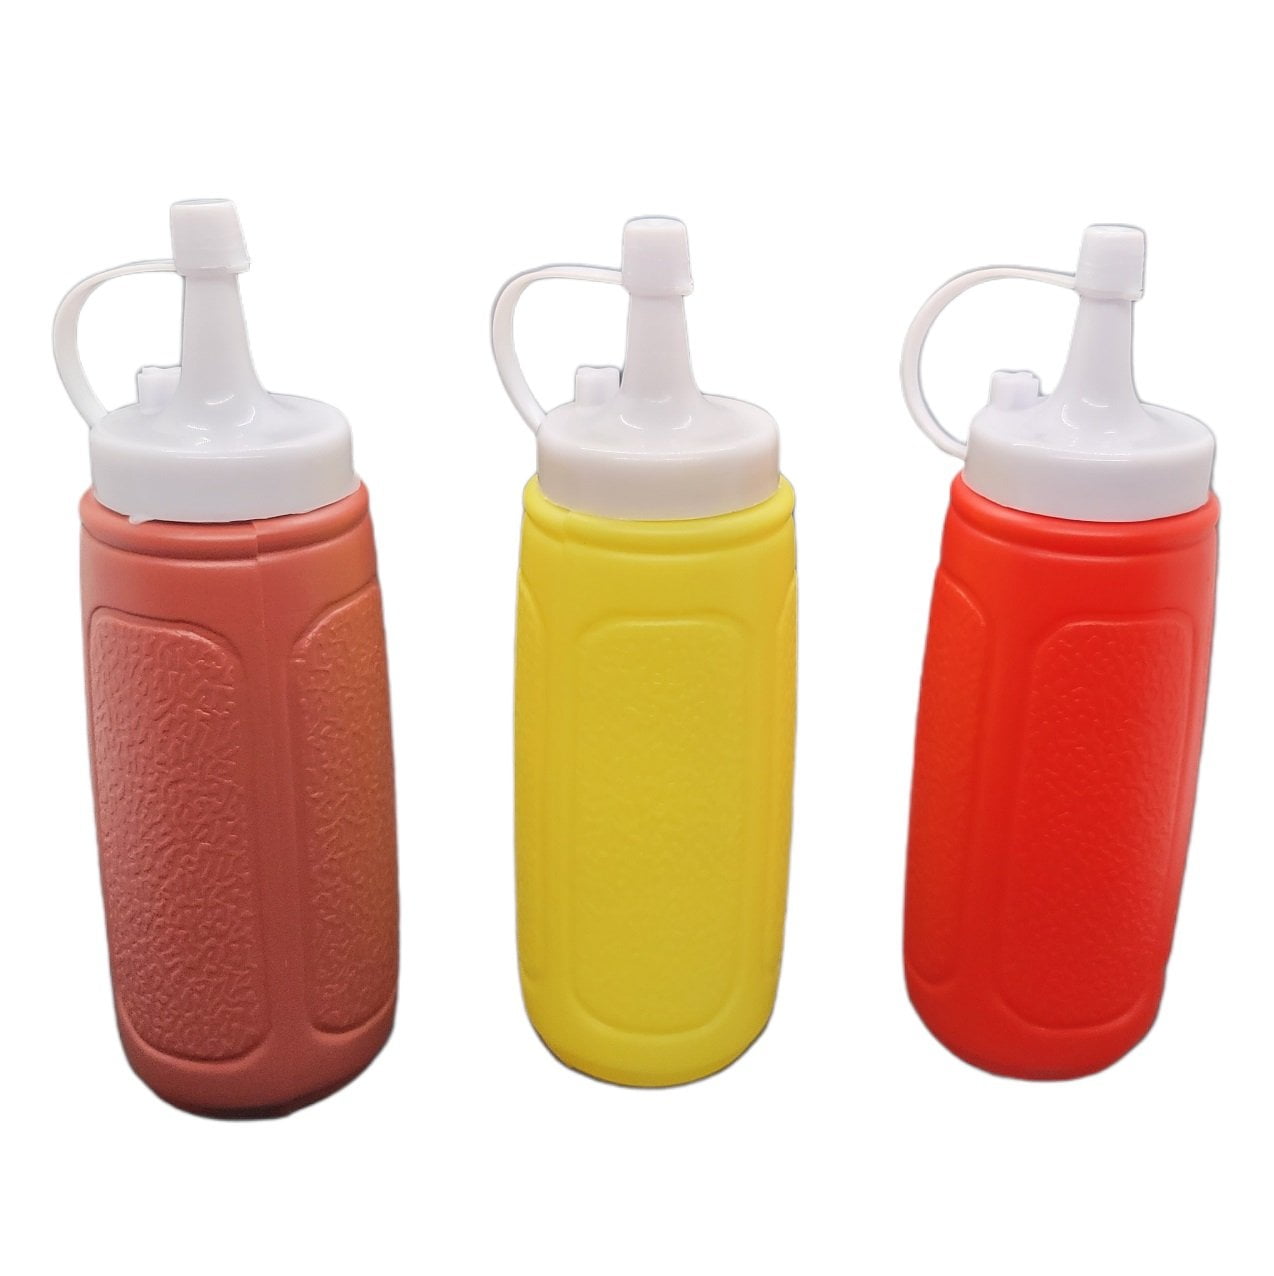 Details about   4pcs Plastic 8 Oz Red Tip Cap Squeeze Bottle Condiment Ketchup Mustard Dispenser